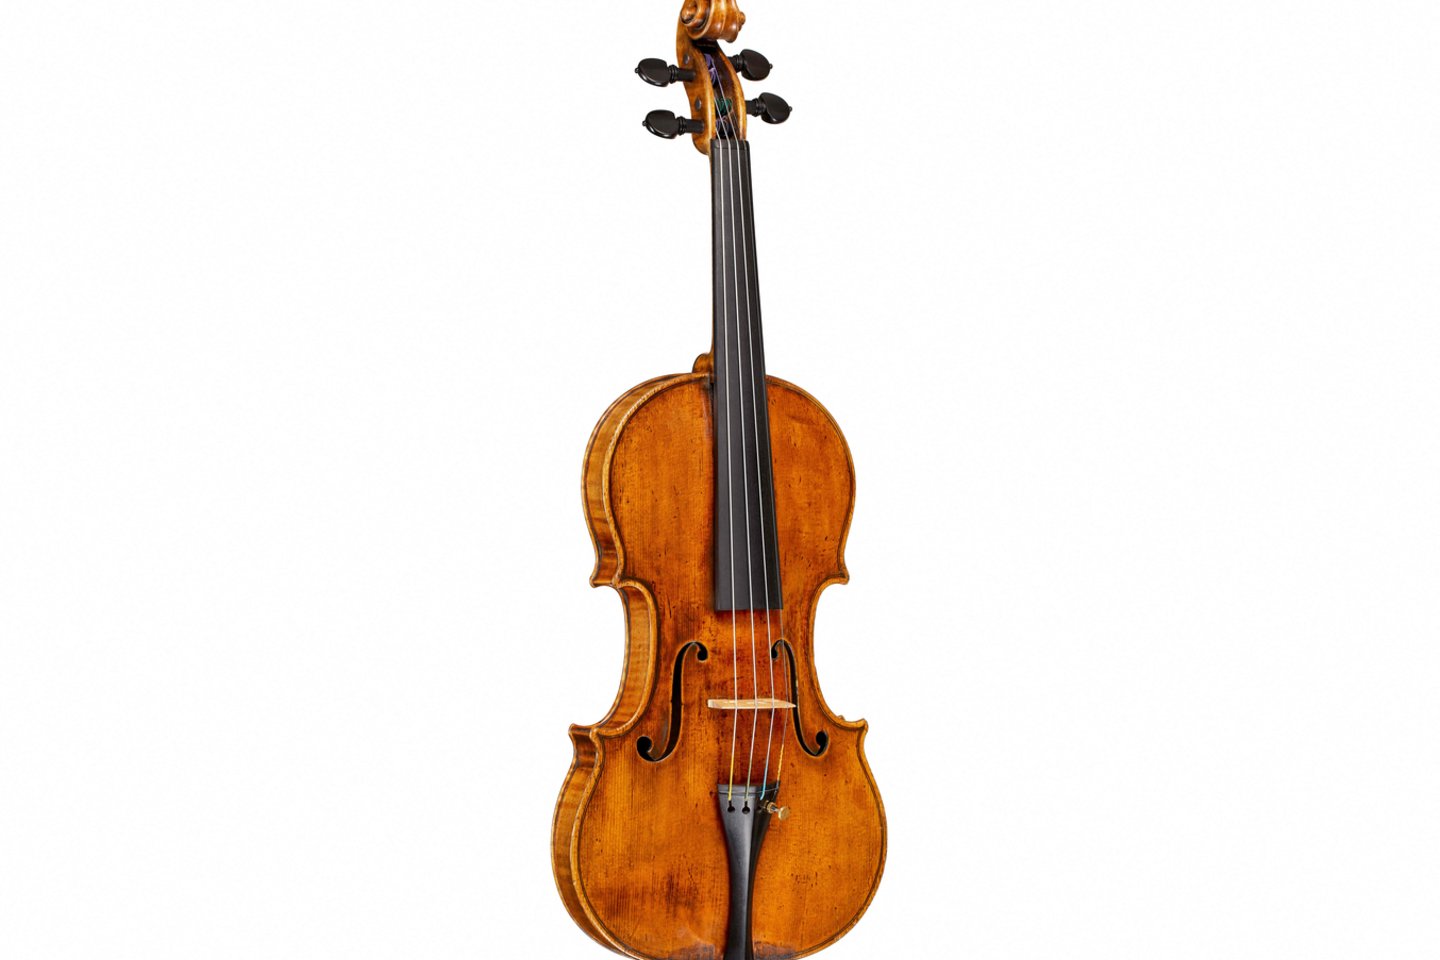 Retas Stradivarijaus smuikas parduotas už beveik rekordinę 15,3 mln. dolerių sumą.<br>AFP/Scanpix nuotr.